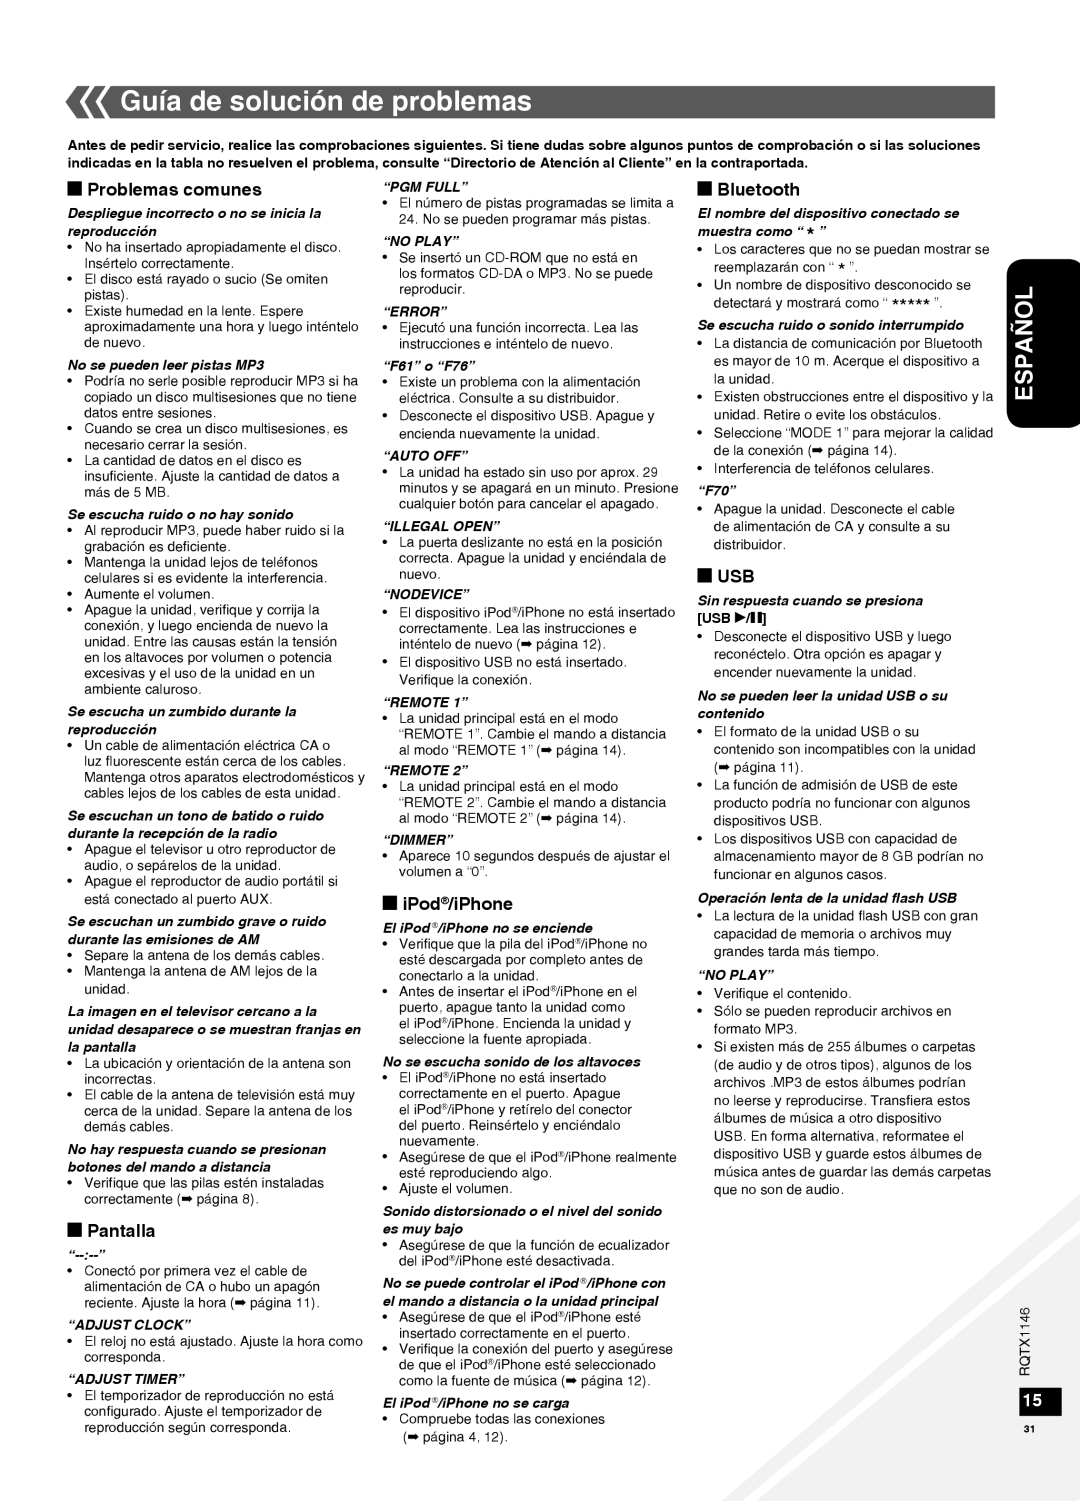 Panasonic SC-HC40 Guía de solución de problemas, g Problemas comunes, gPantalla, Español, giPod/iPhone, gBluetooth, gUSB 